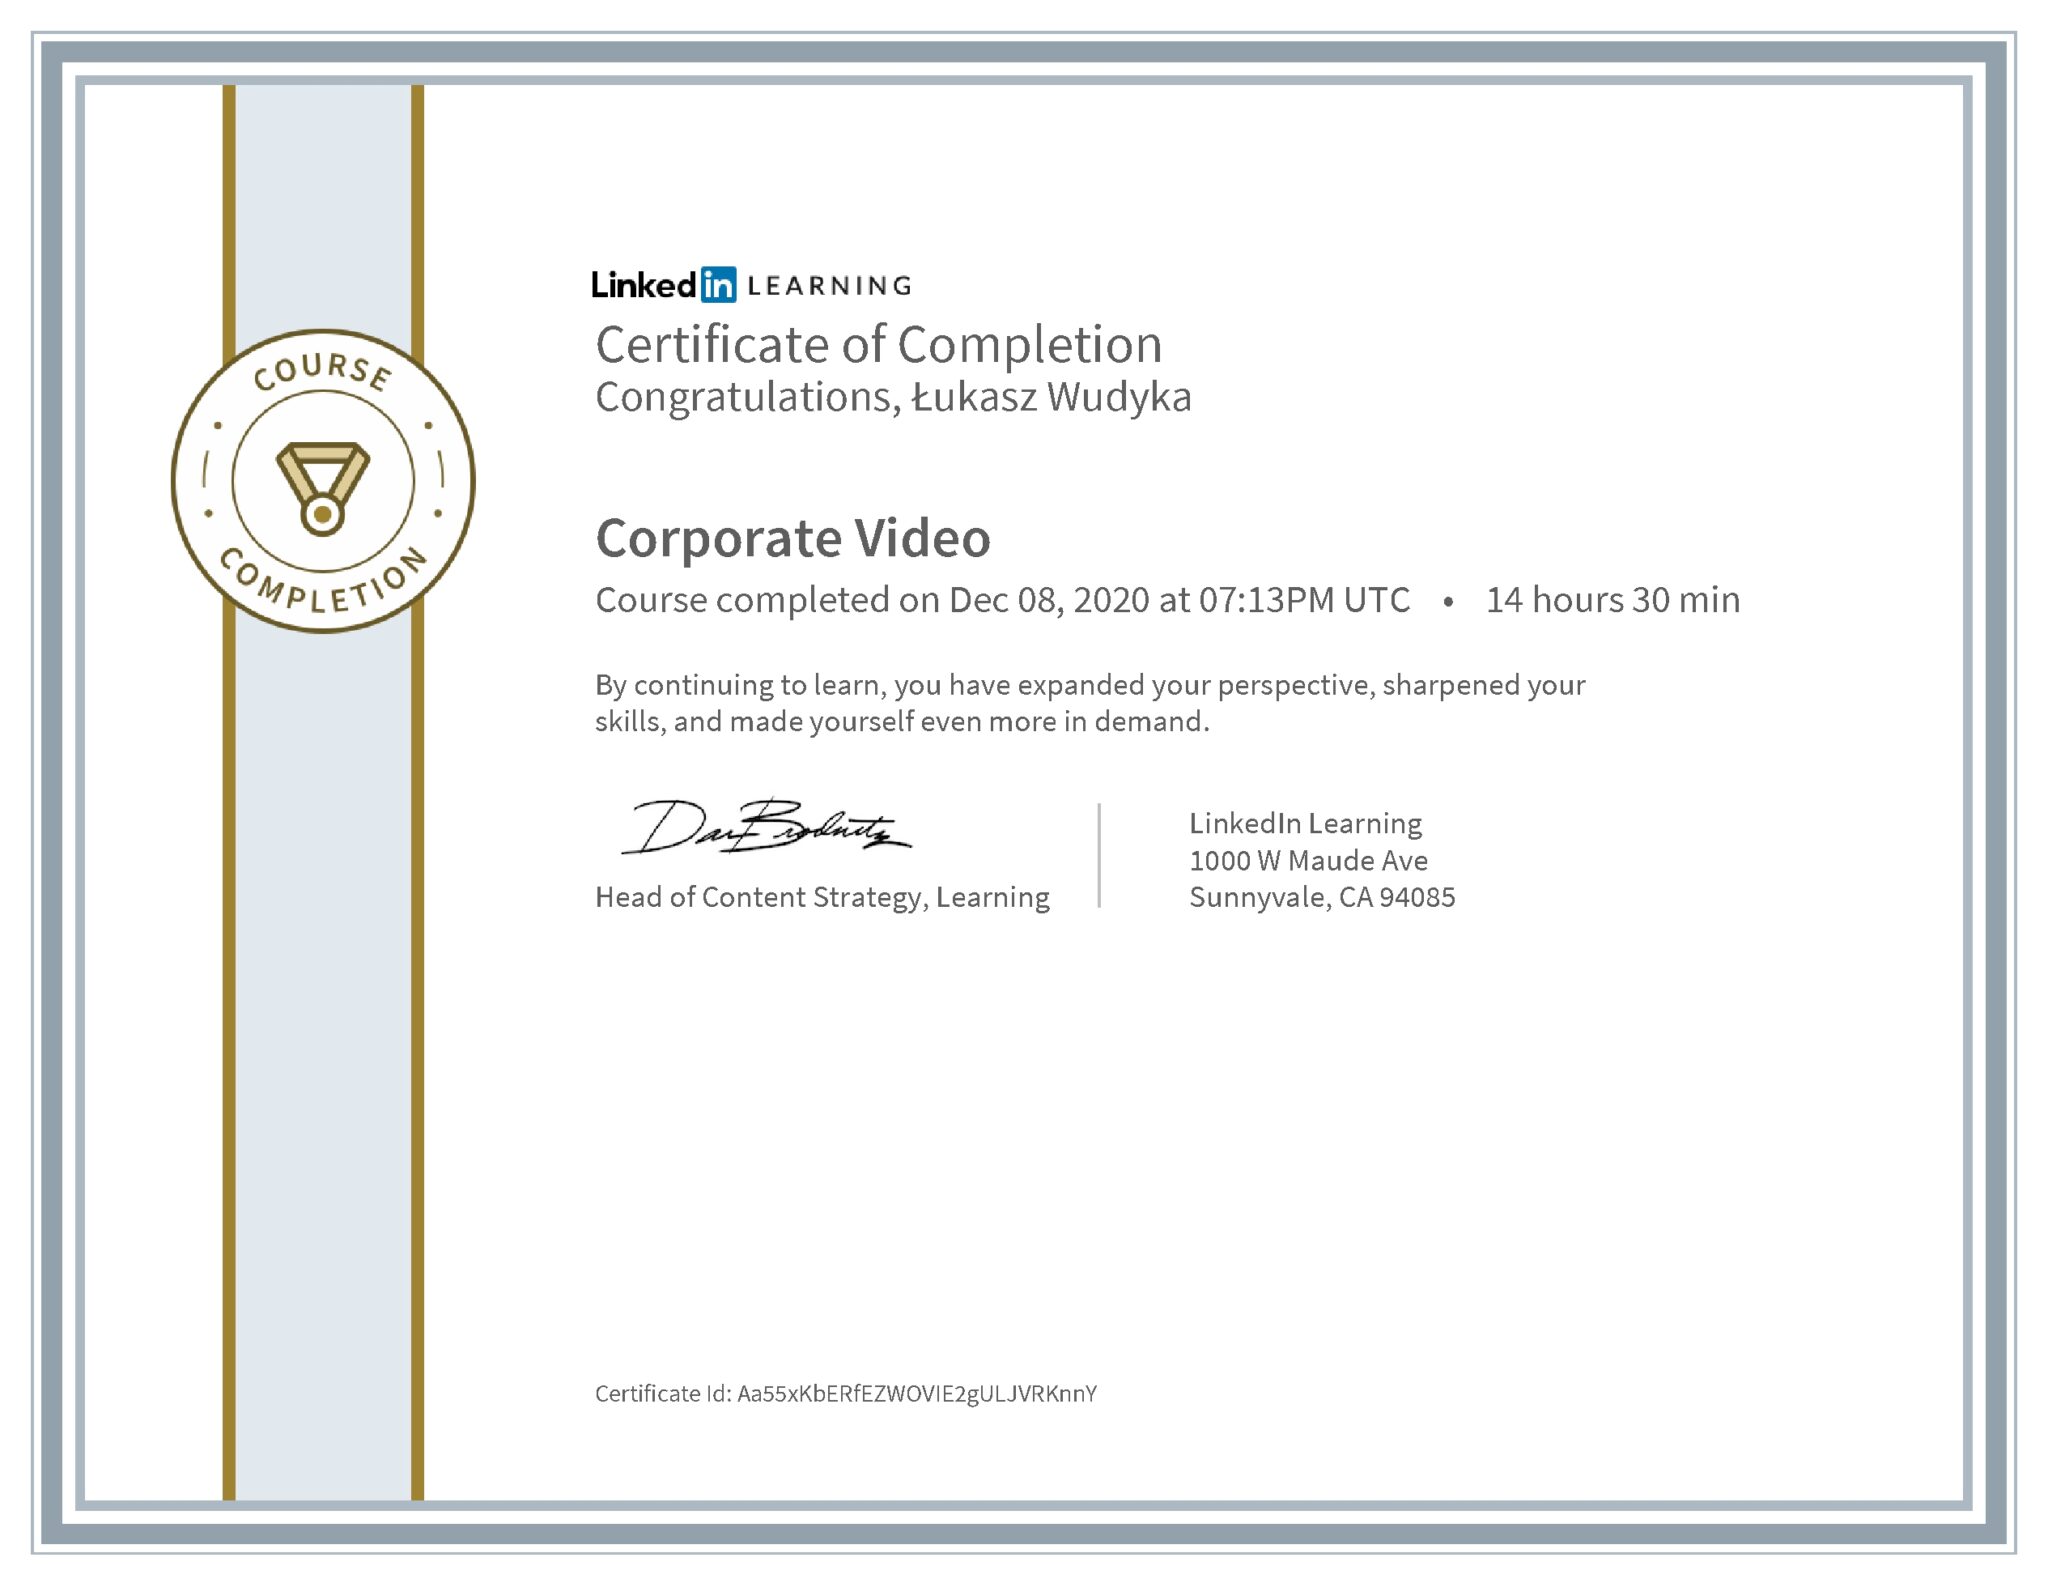 Łukasz Wudyka certyfikat LinkedIn Corporate Video